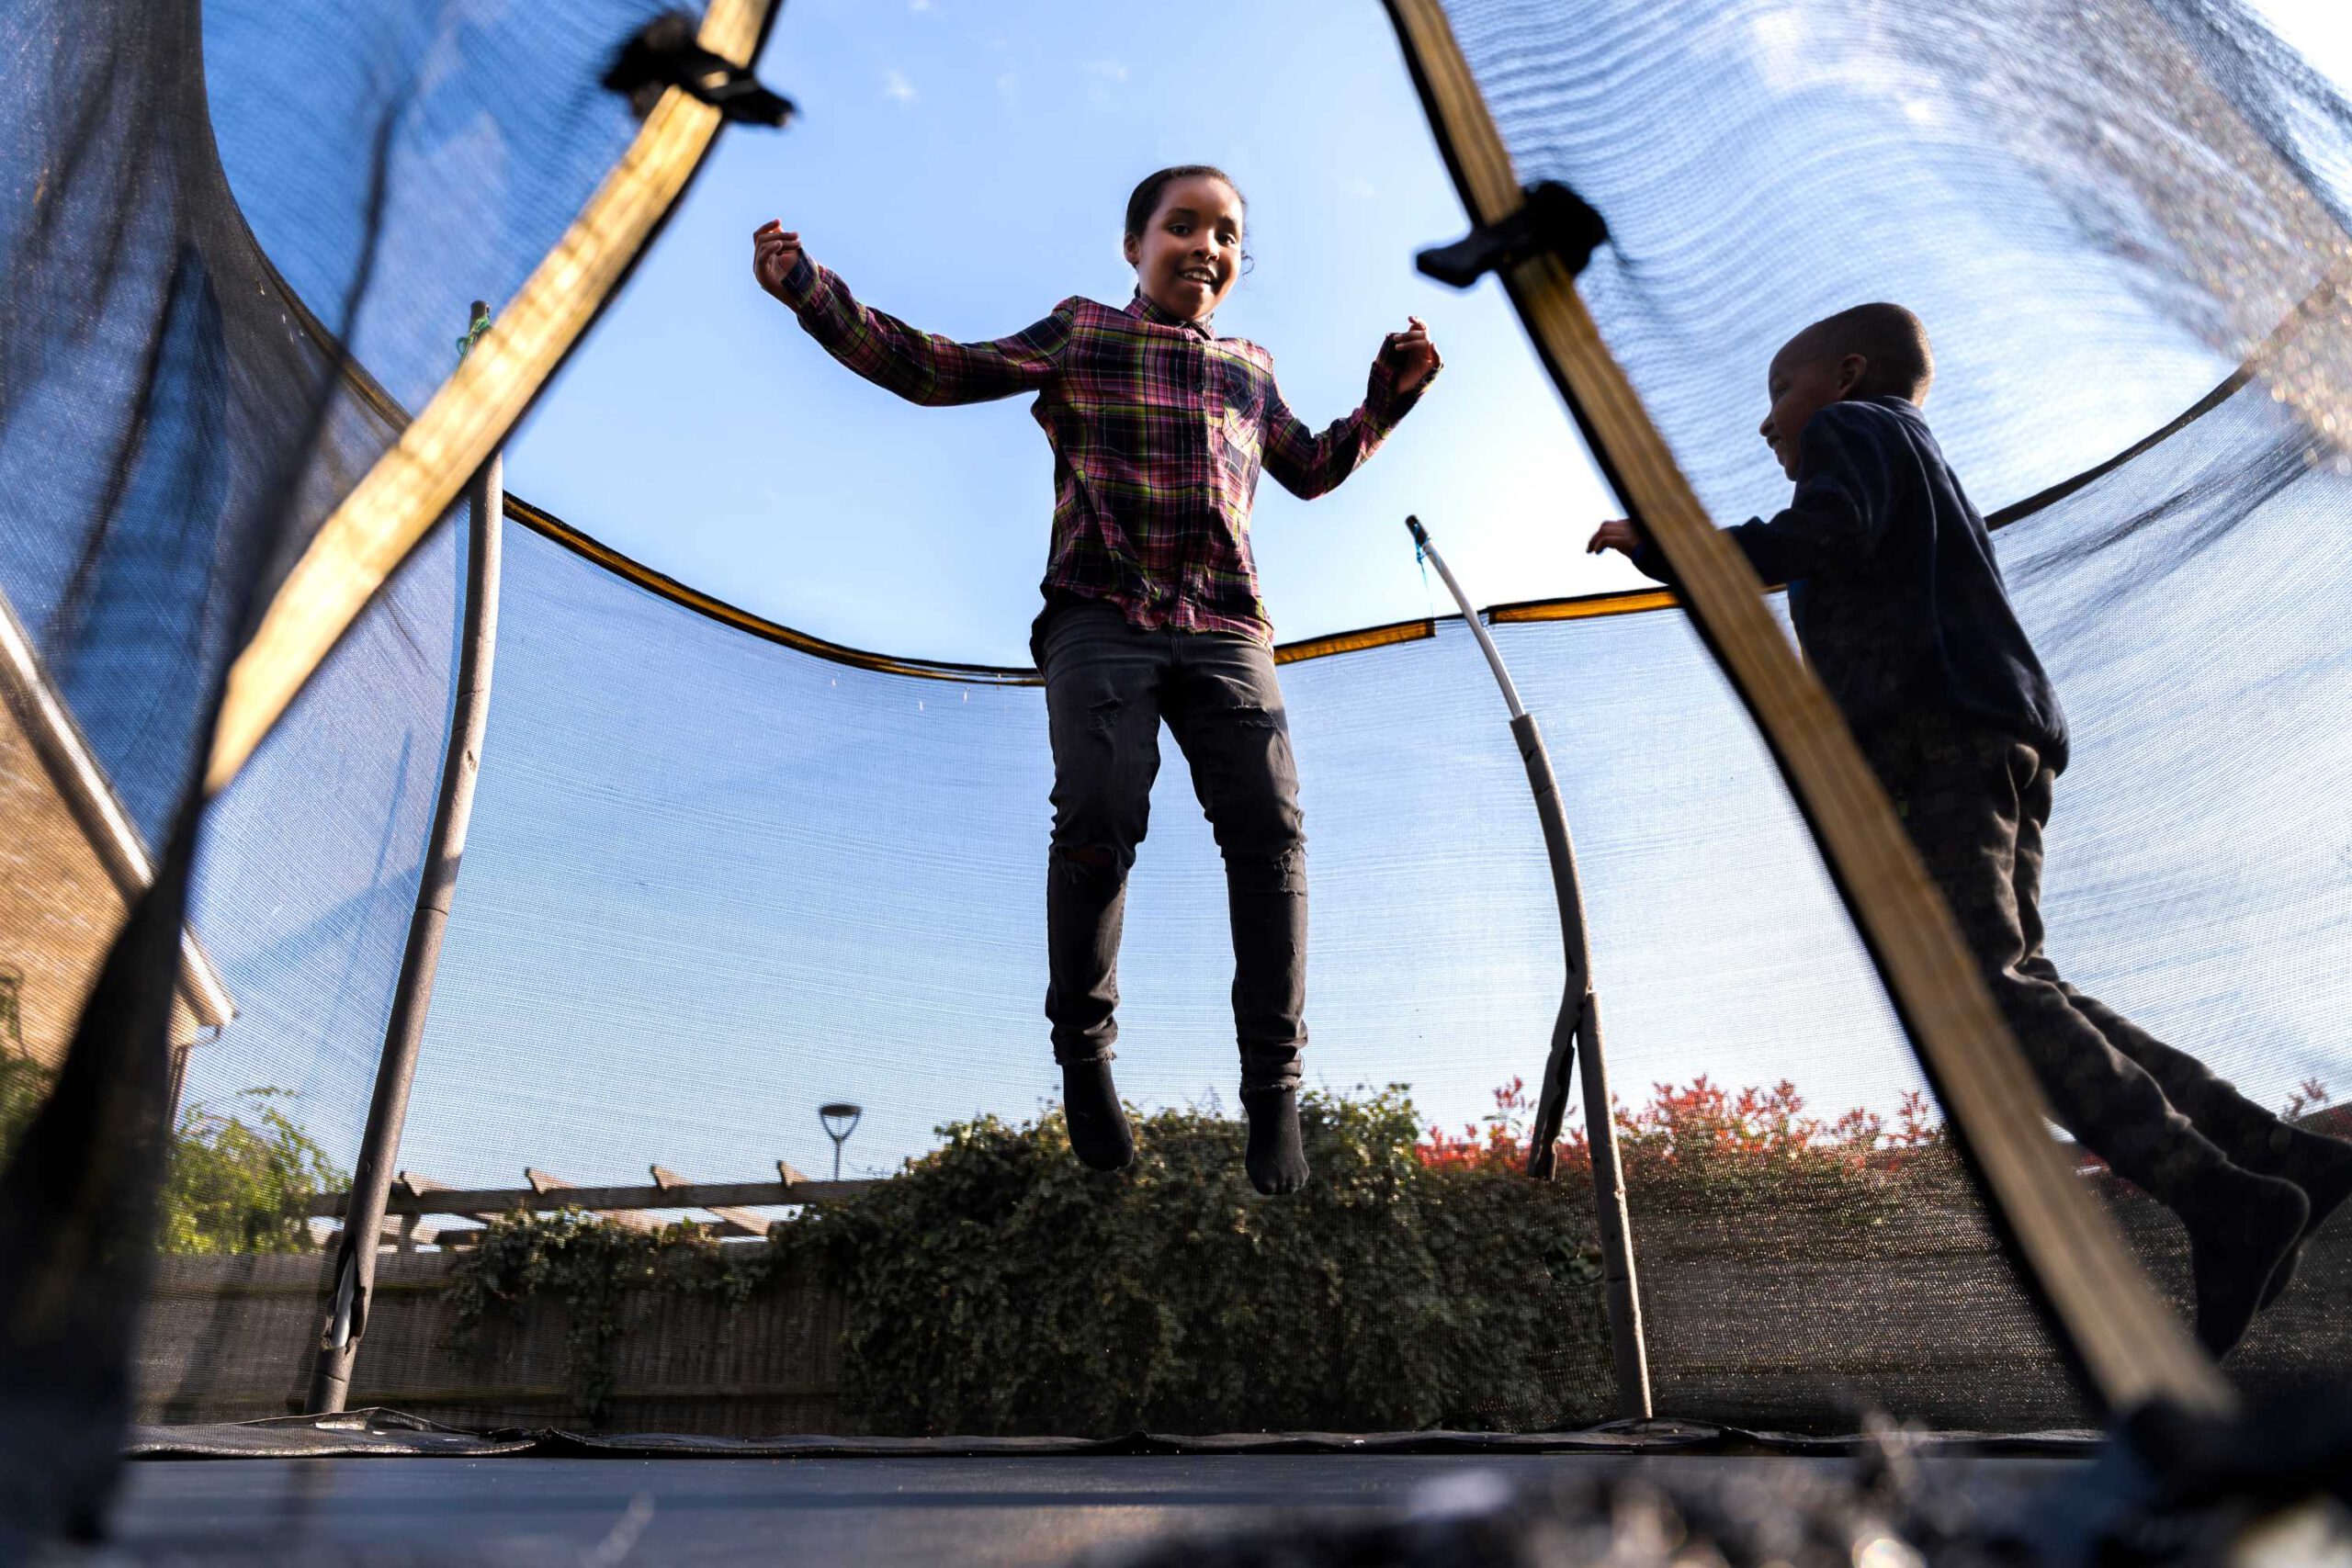 Rechthoekige trampoline